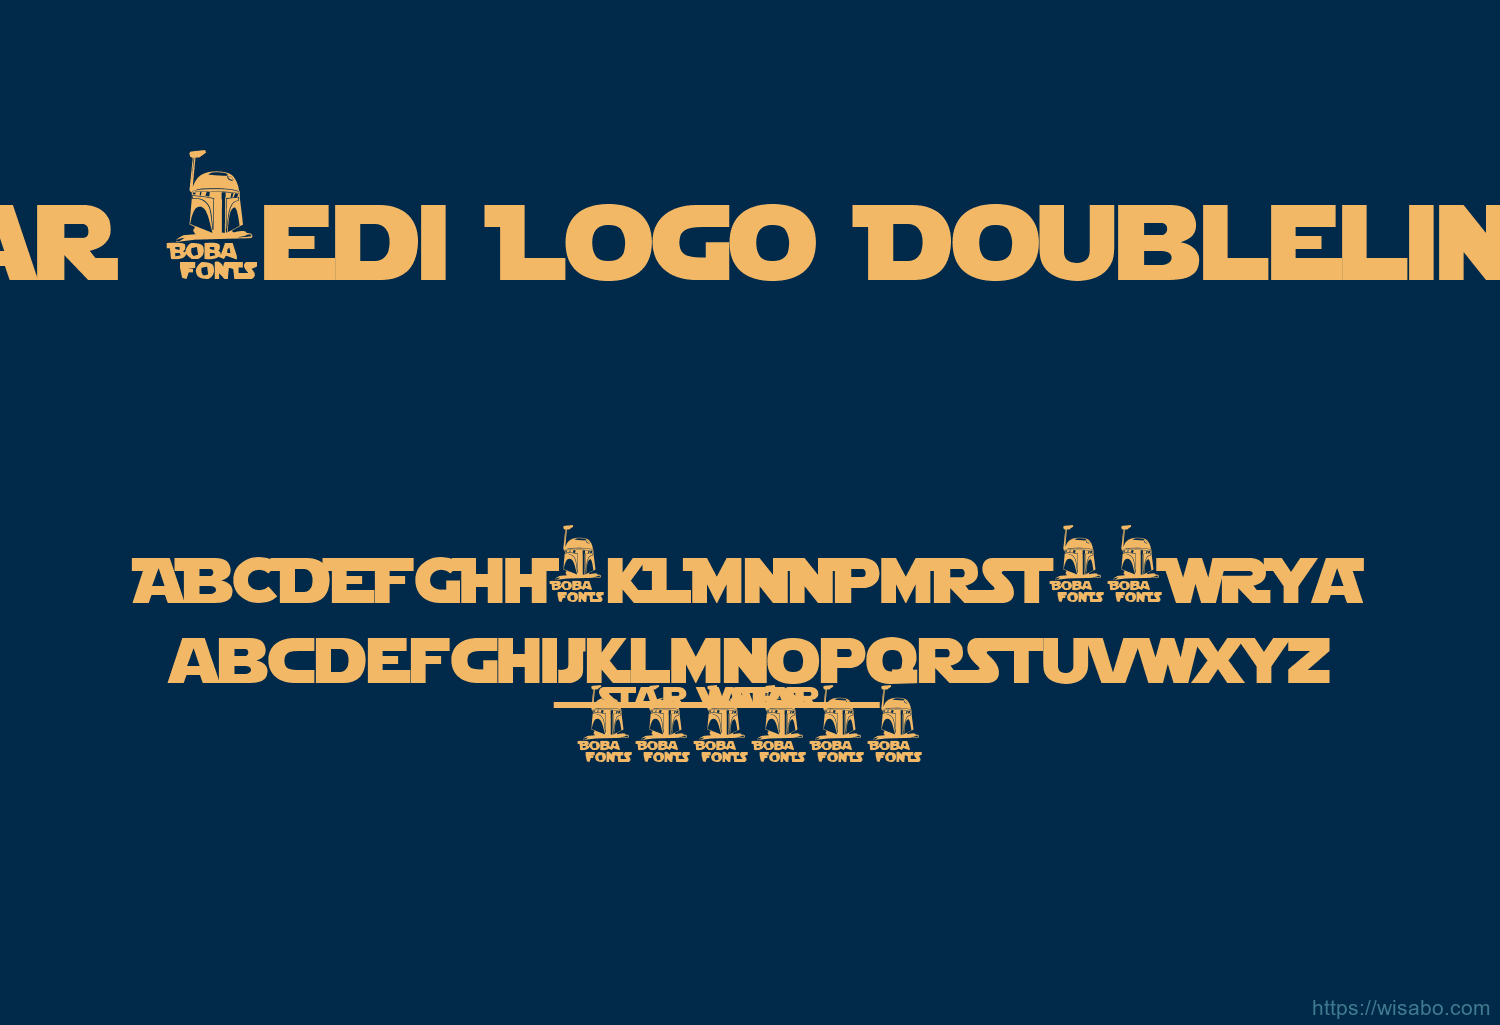 Star Jedi Logo Doubleline1